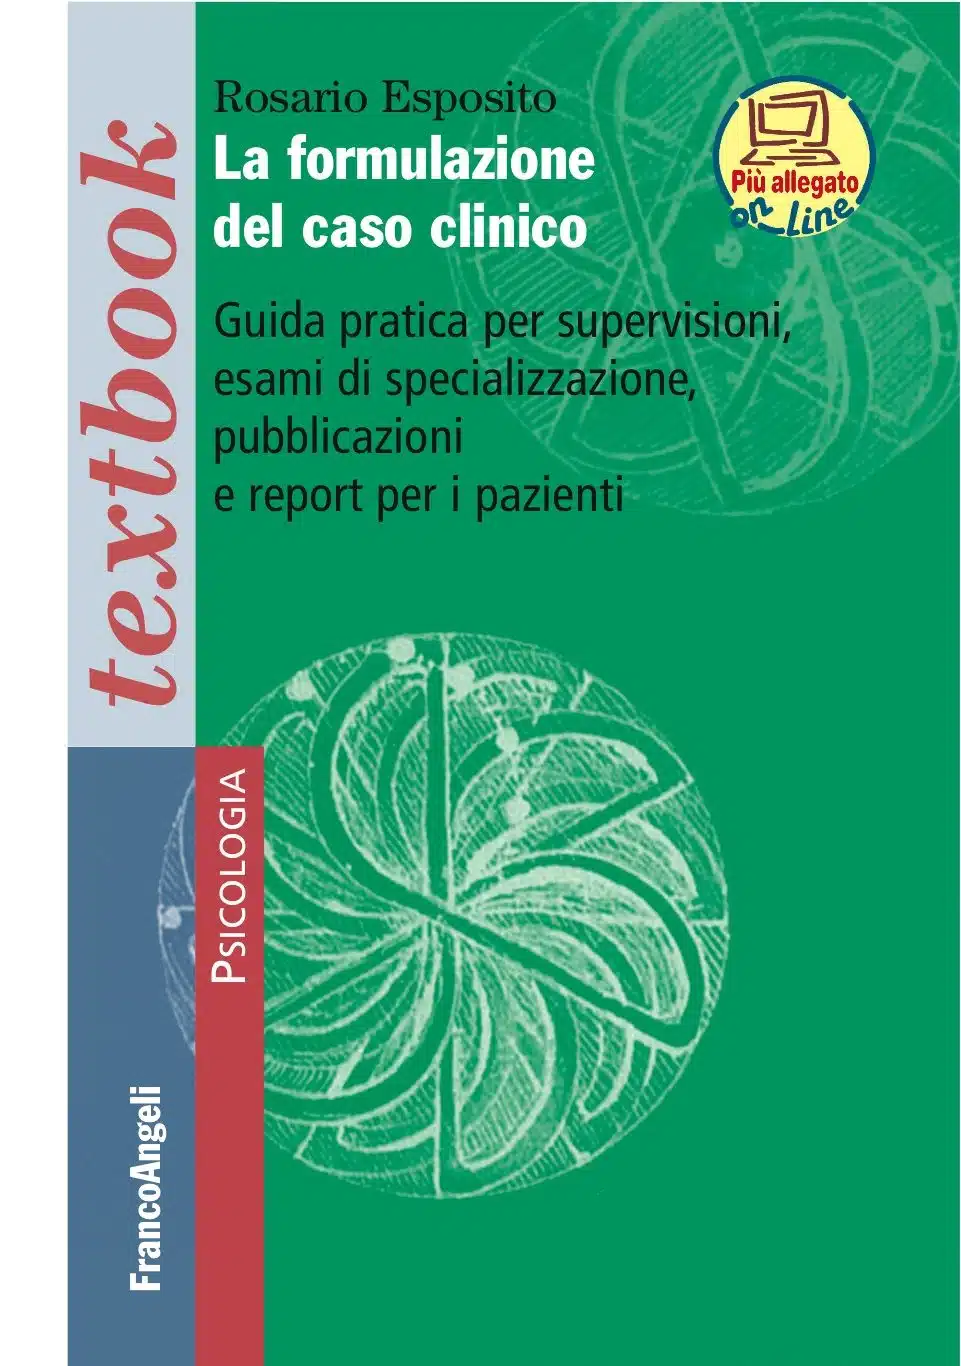 La formulazione del caso clinico di Rosario Esposito - Recensione del libro